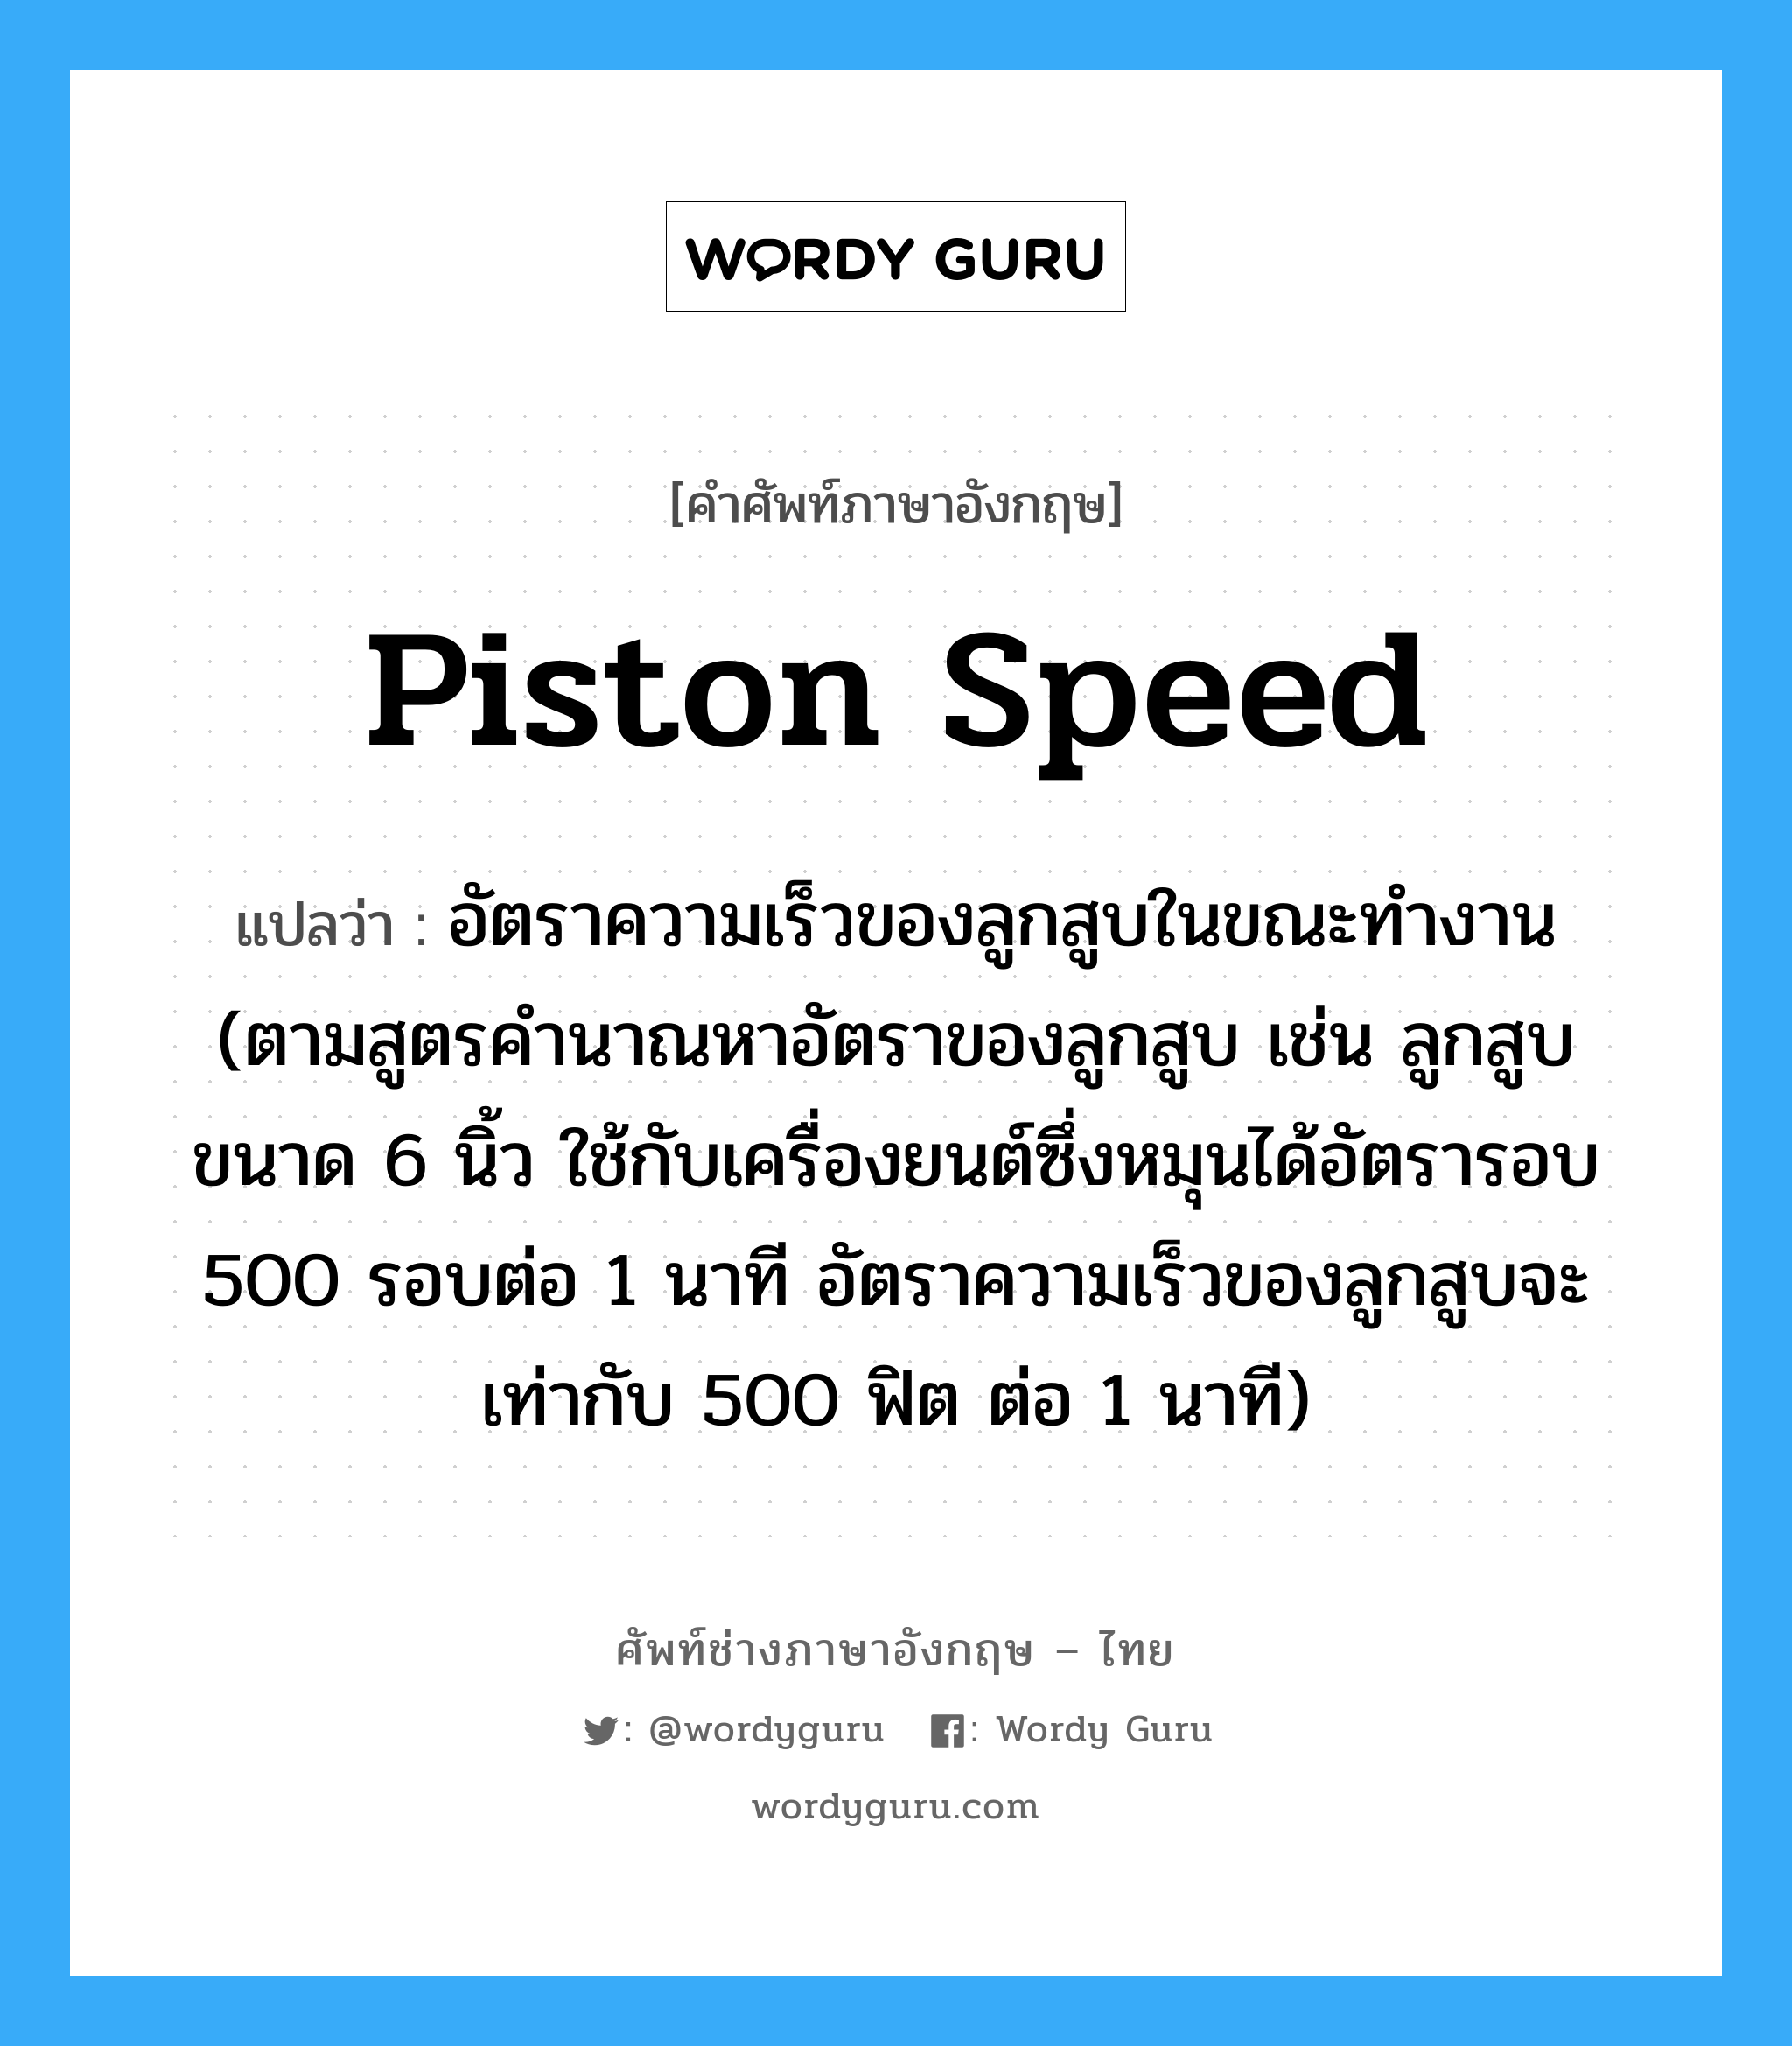 piston speed แปลว่า?, คำศัพท์ช่างภาษาอังกฤษ - ไทย piston speed คำศัพท์ภาษาอังกฤษ piston speed แปลว่า อัตราความเร็วของลูกสูบในขณะทำงาน (ตามสูตรคำนาณหาอัตราของลูกสูบ เช่น ลูกสูบขนาด 6 นิ้ว ใช้กับเครื่องยนต์ซึ่งหมุนได้อัตรารอบ 500 รอบต่อ 1 นาที อัตราความเร็วของลูกสูบจะเท่ากับ 500 ฟิต ต่อ 1 นาที)